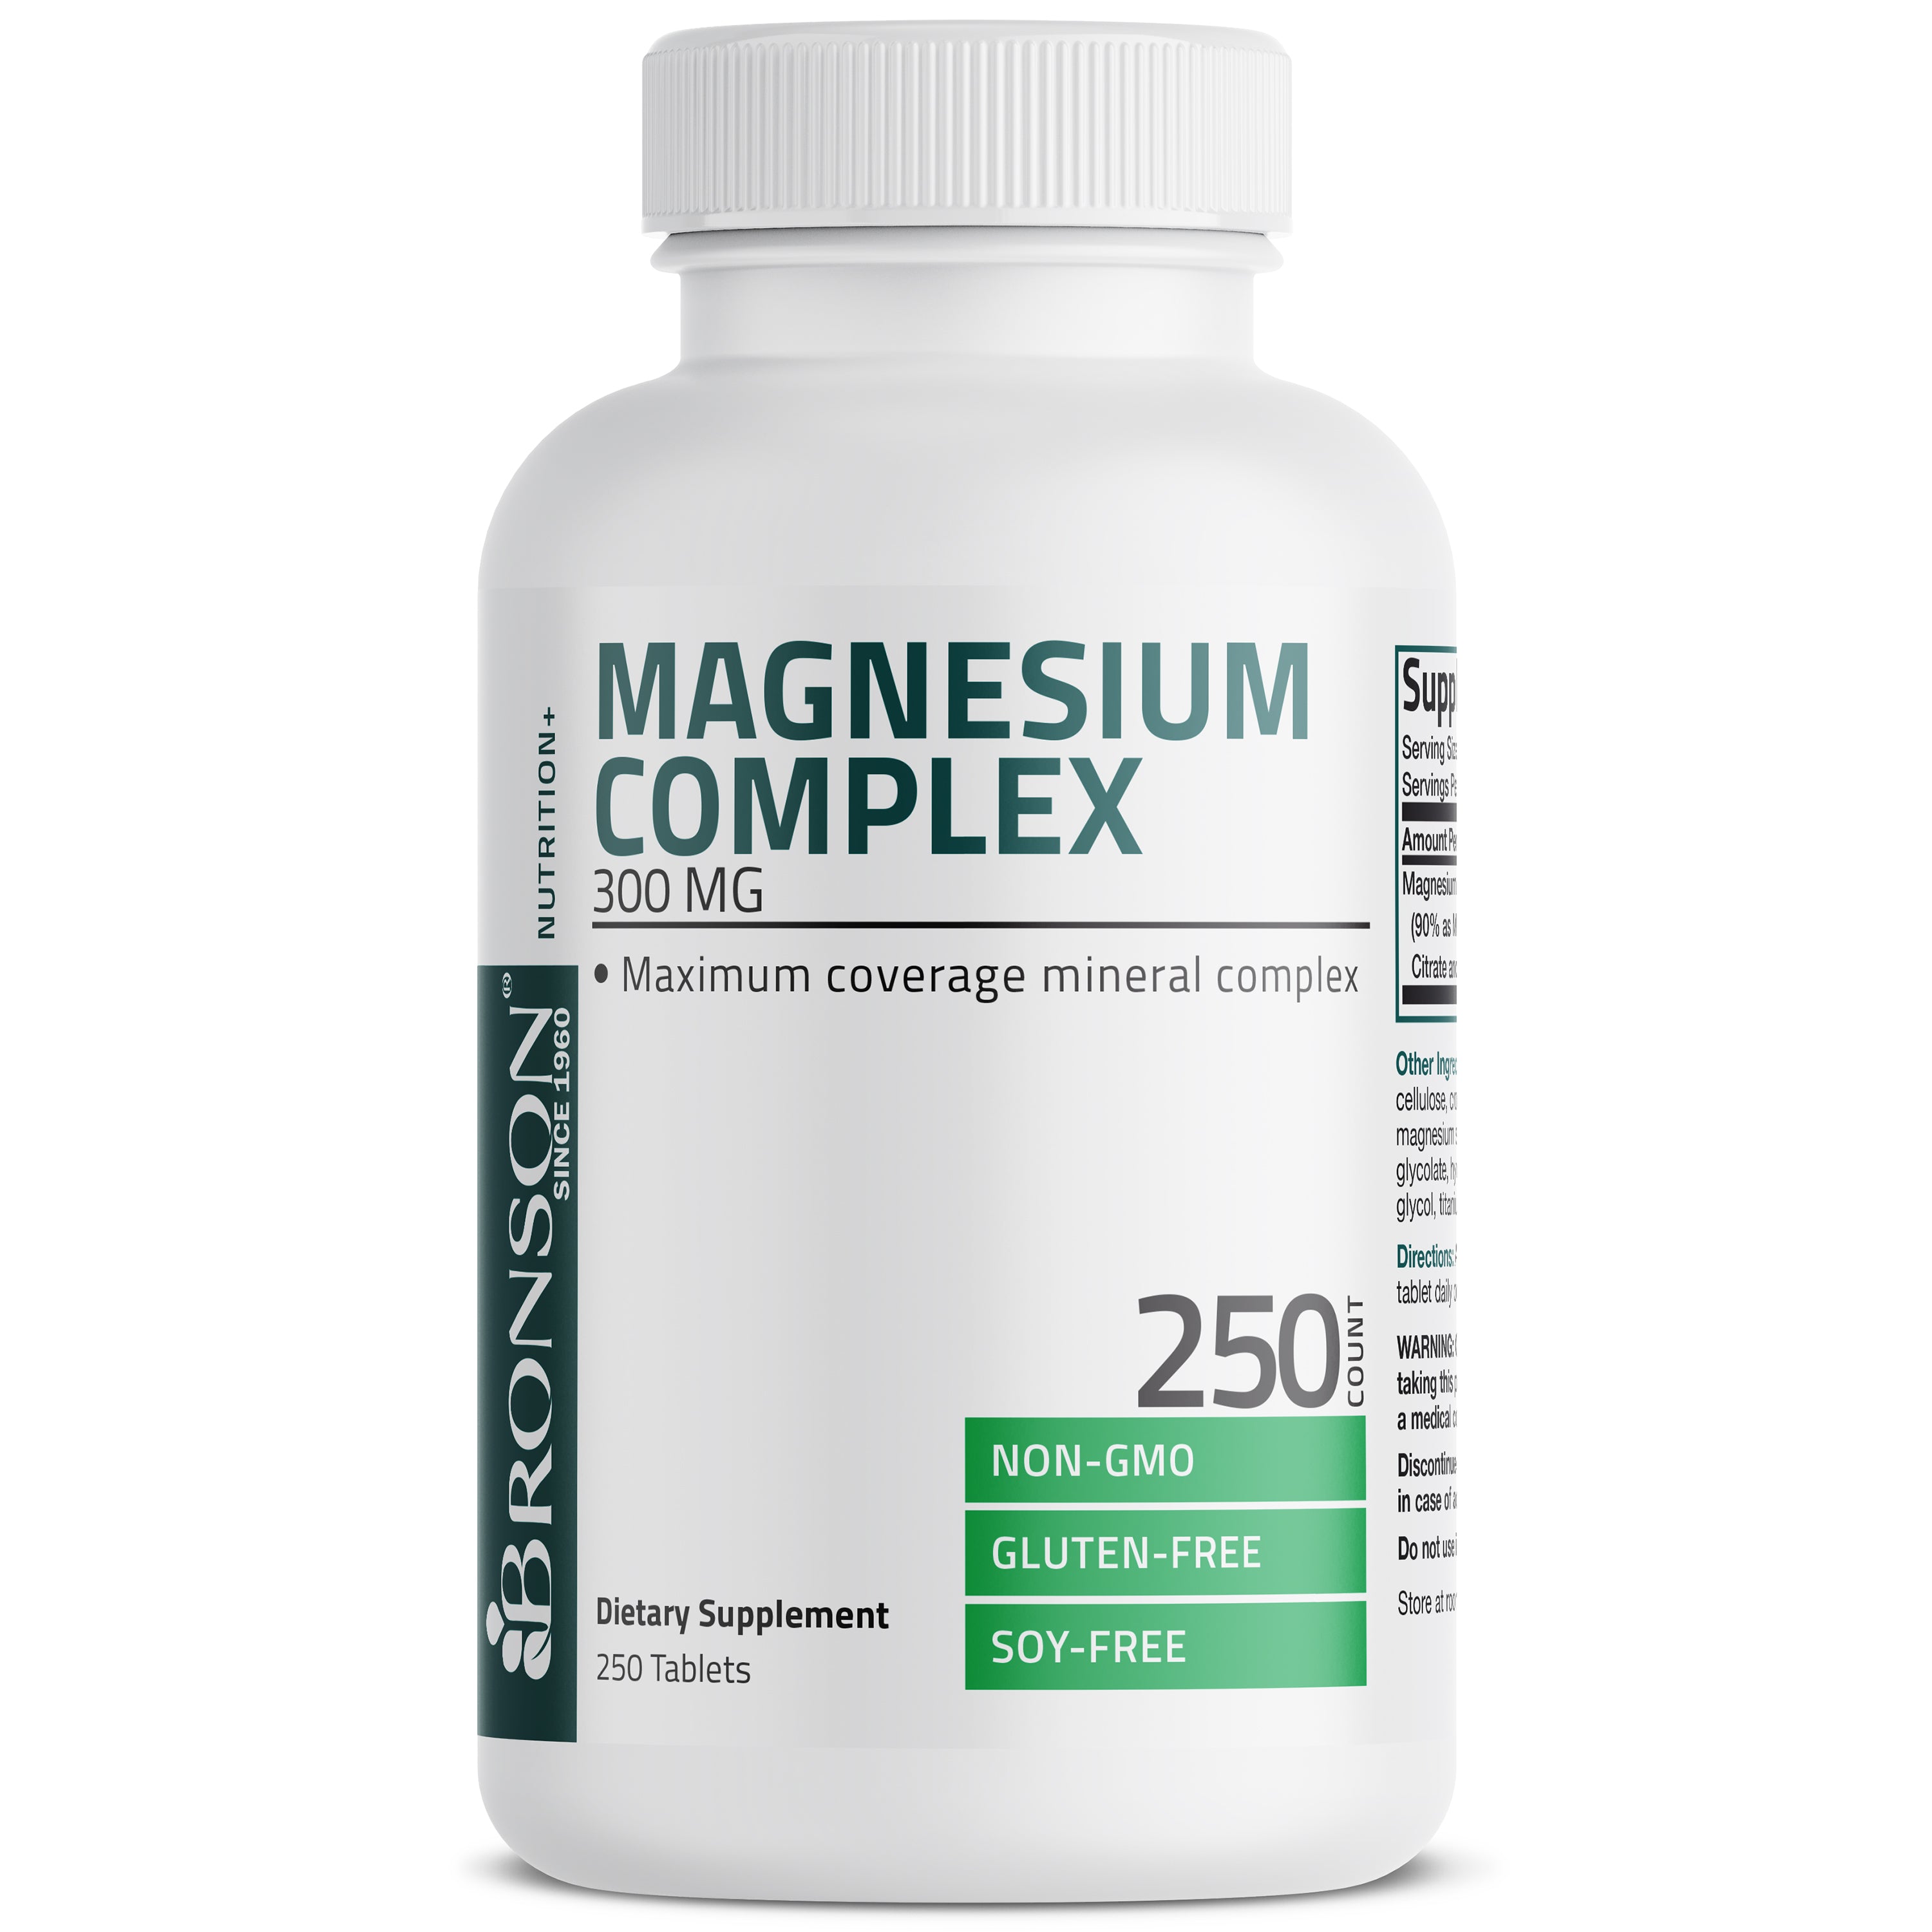 Magnesium Complex Maximum Coverage - 300 mg view 5 of 4